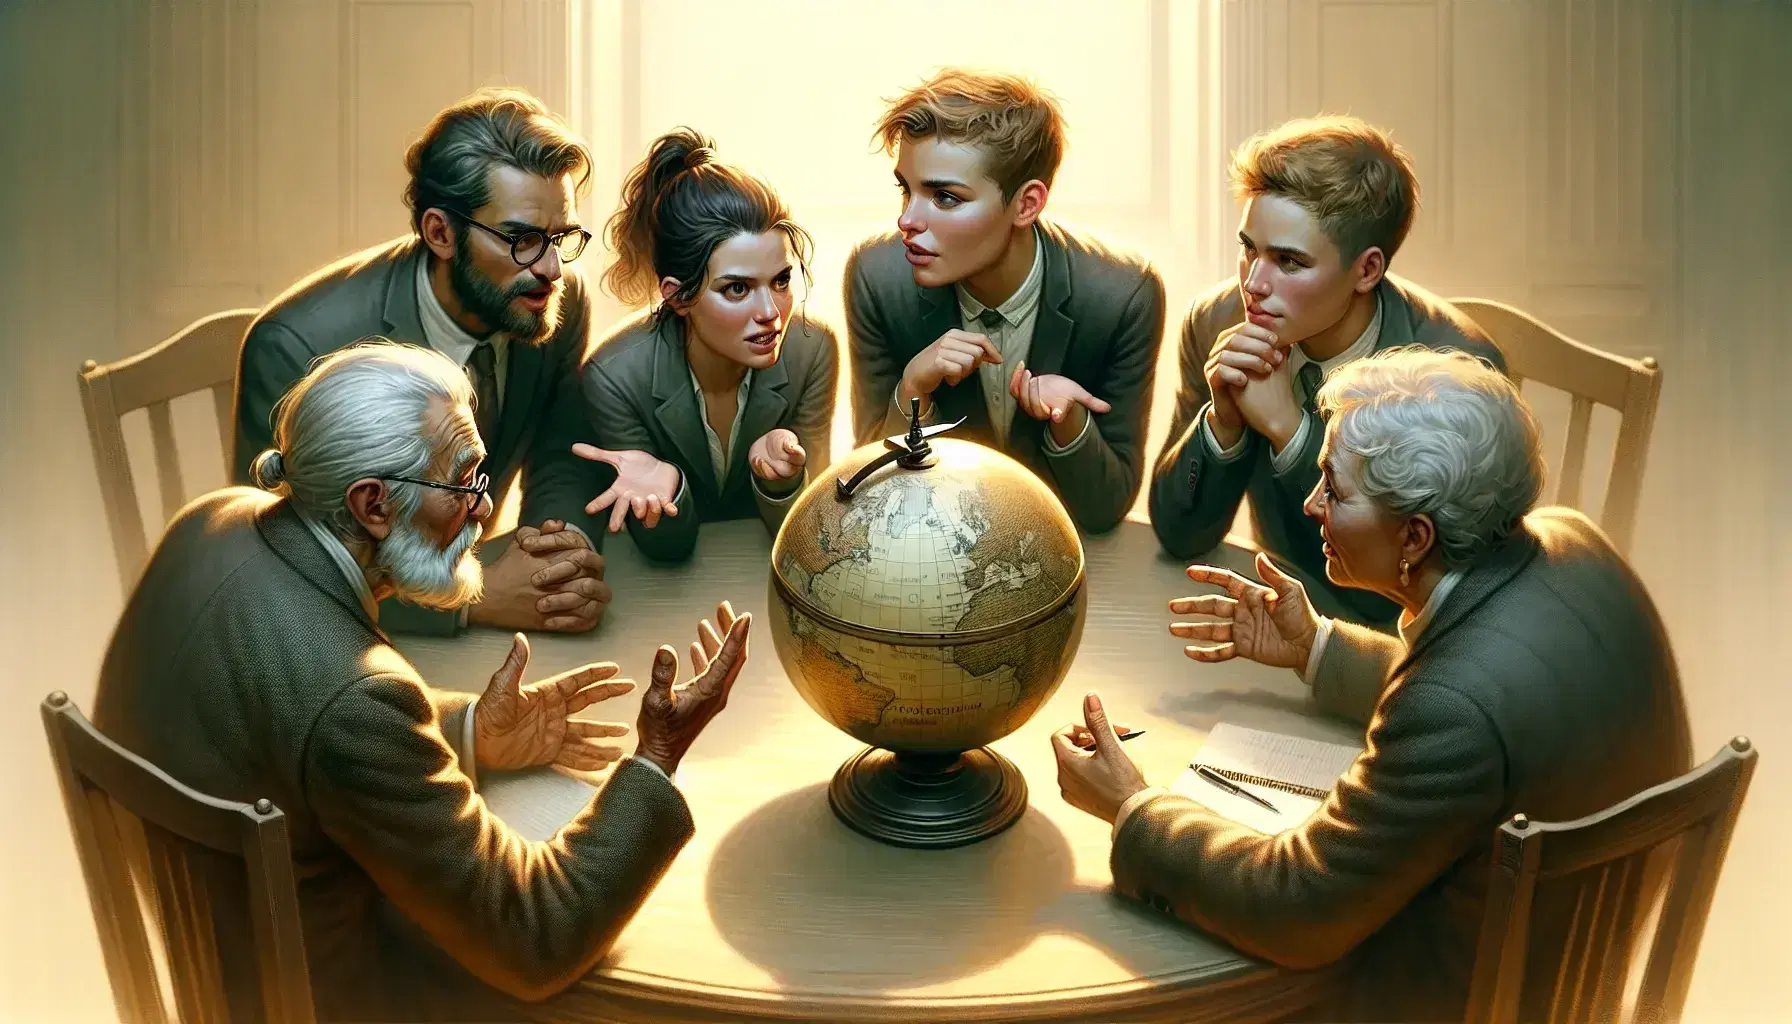 Grupo de cuatro personas de diversas edades discutiendo animadamente alrededor de una mesa con un globo terráqueo sin marcas en el centro.